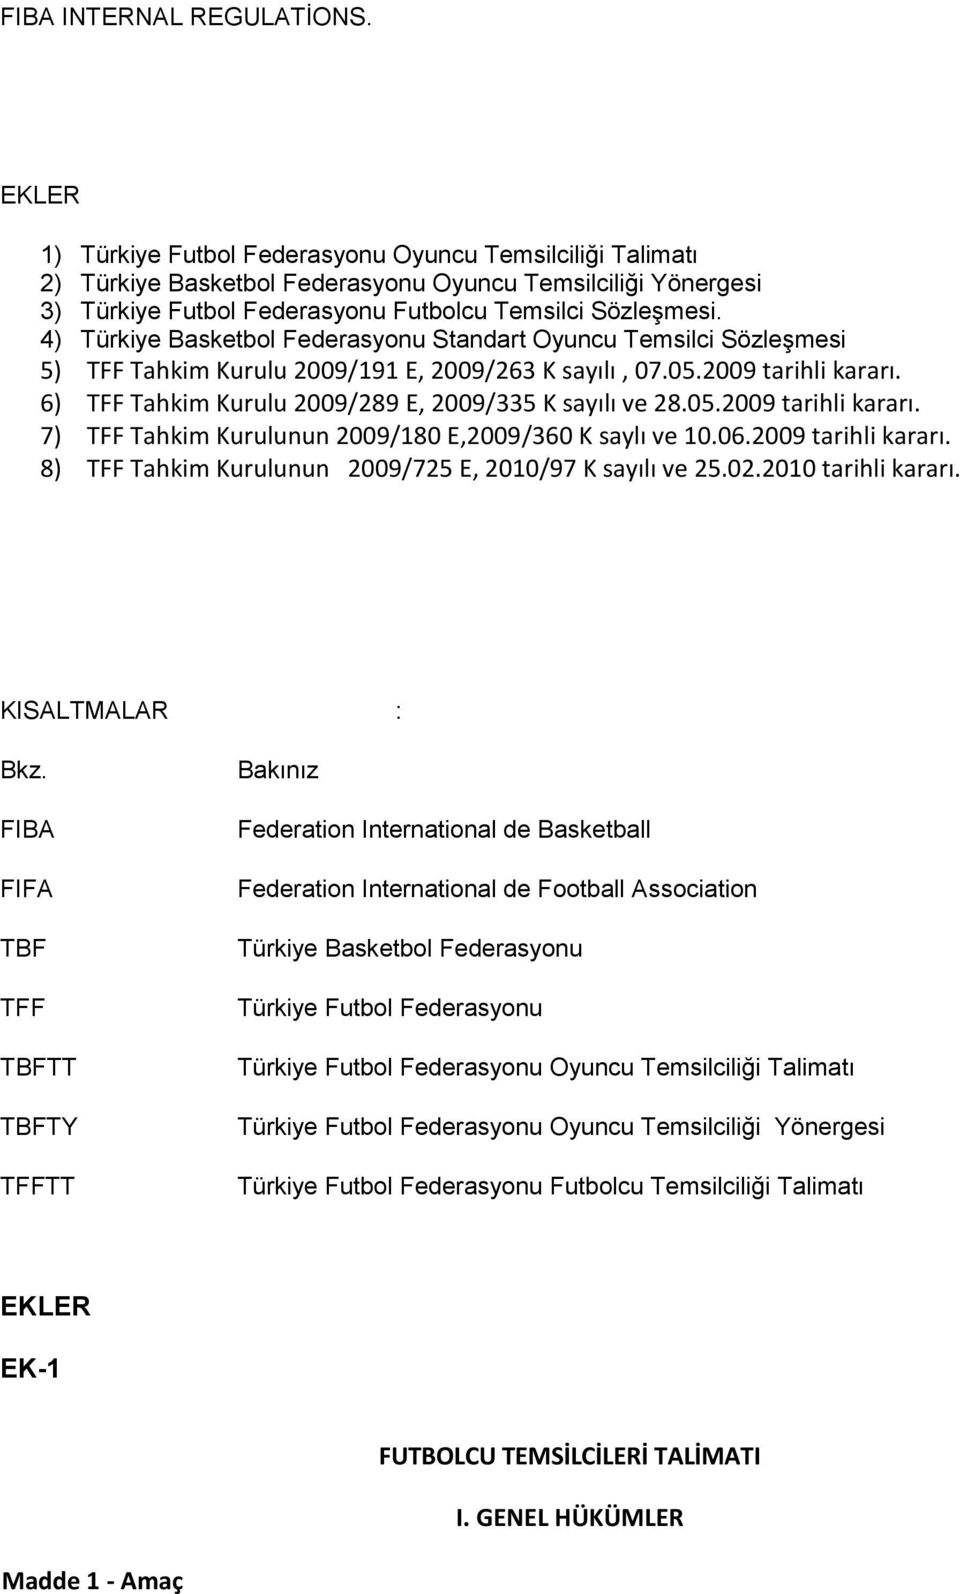 4) Türkiye Basketbol Federasyonu Standart Oyuncu Temsilci Sözleşmesi 5) TFF Tahkim Kurulu 2009/191 E, 2009/263 K sayılı, 07.05.2009 tarihli kararı.